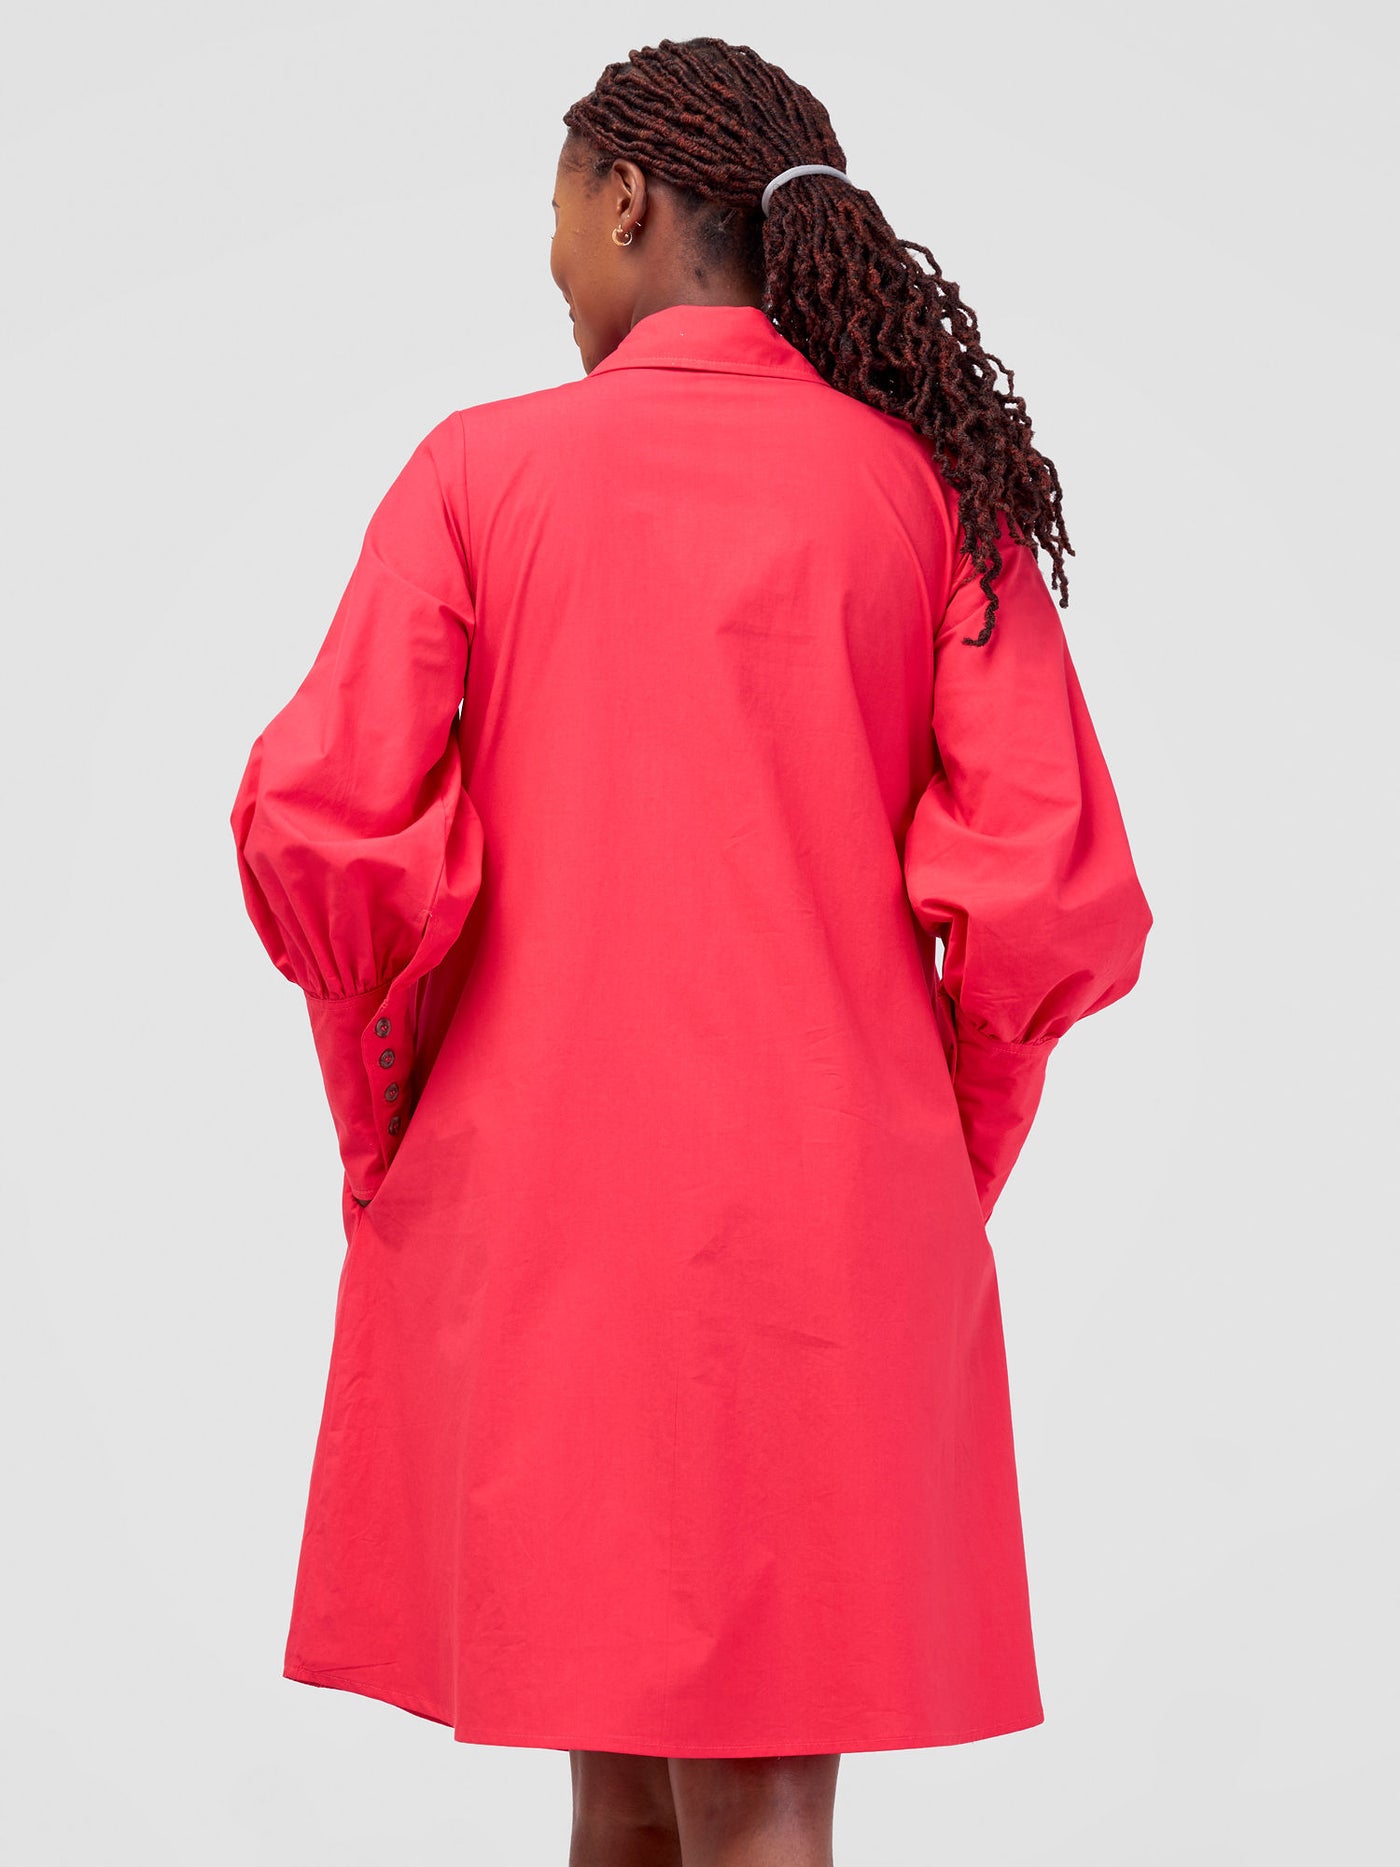 Safari Hawi Bishop Sleeve Tent Shirt Dress - Pink